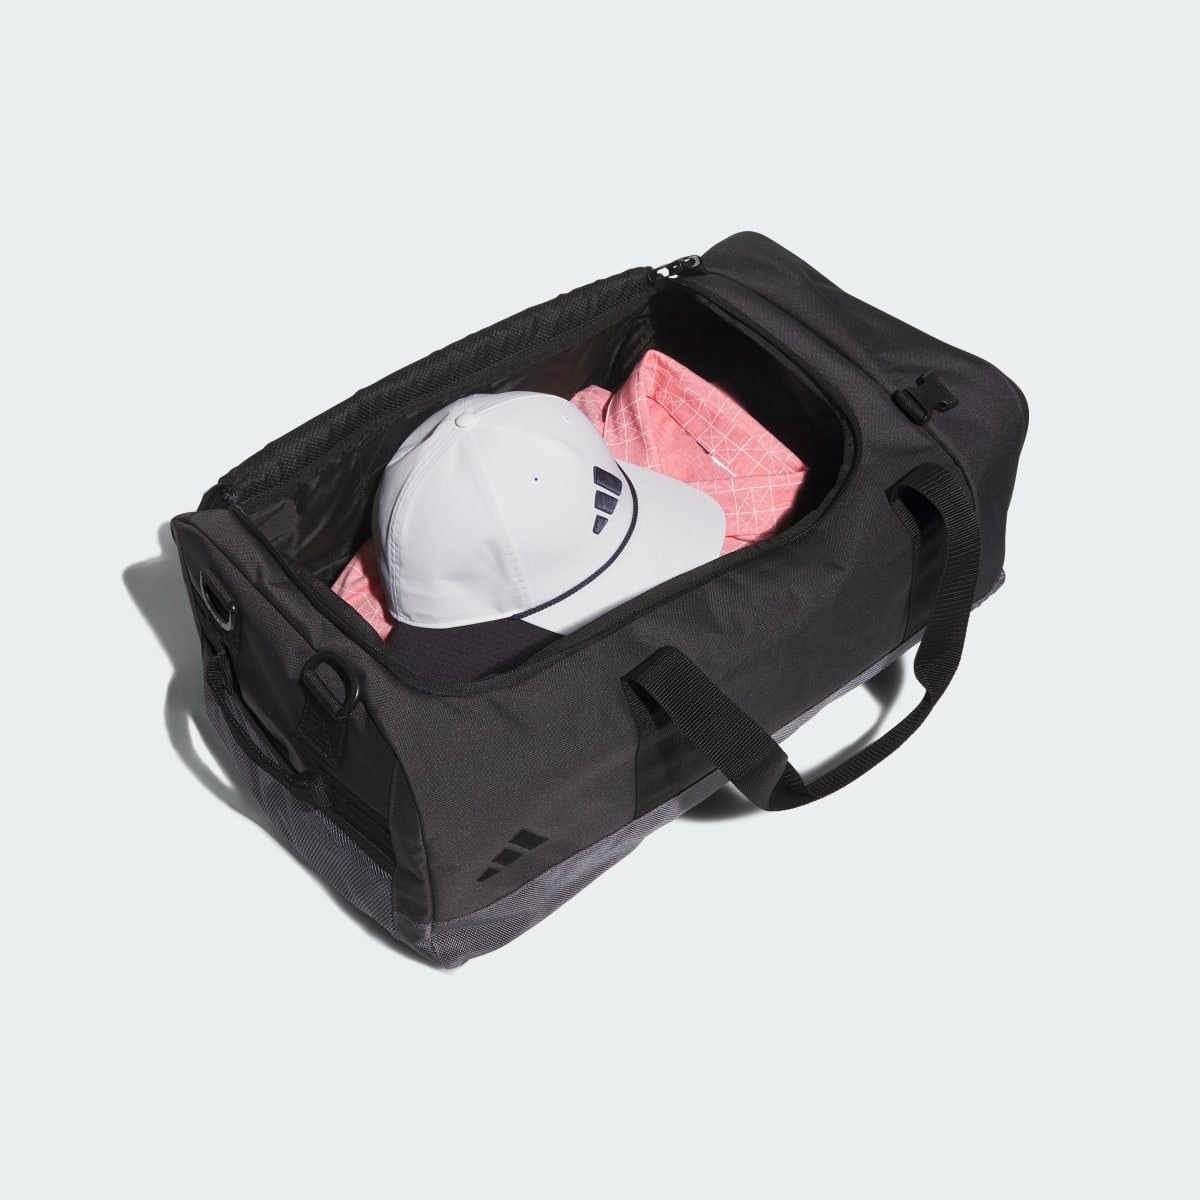 Adidas Hybrid Duffel Bag. 5